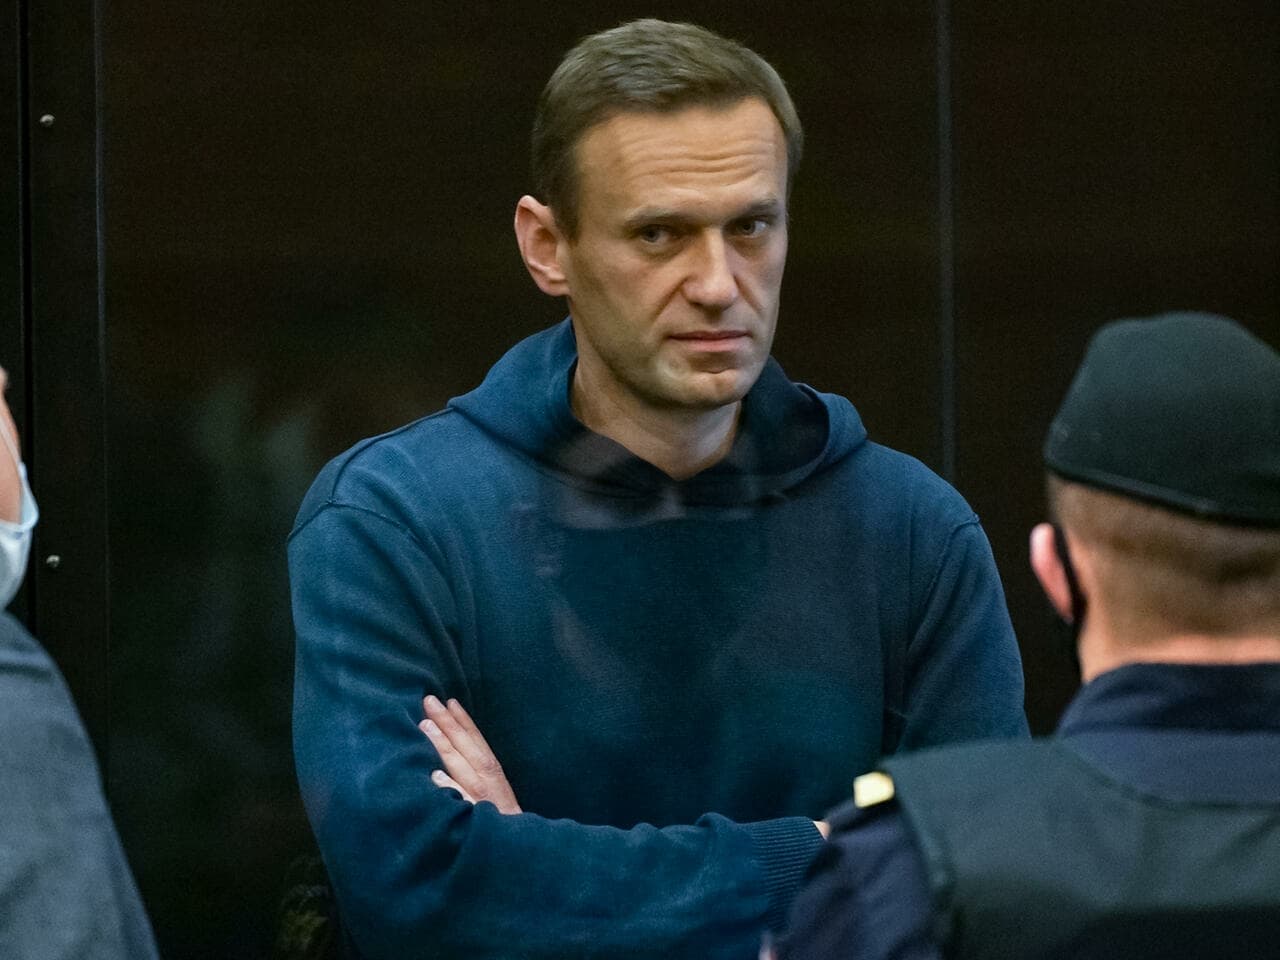 Napi nyolc órán át állami propagandafilmeket nézetnek a bebörtönzött Navalnijjal